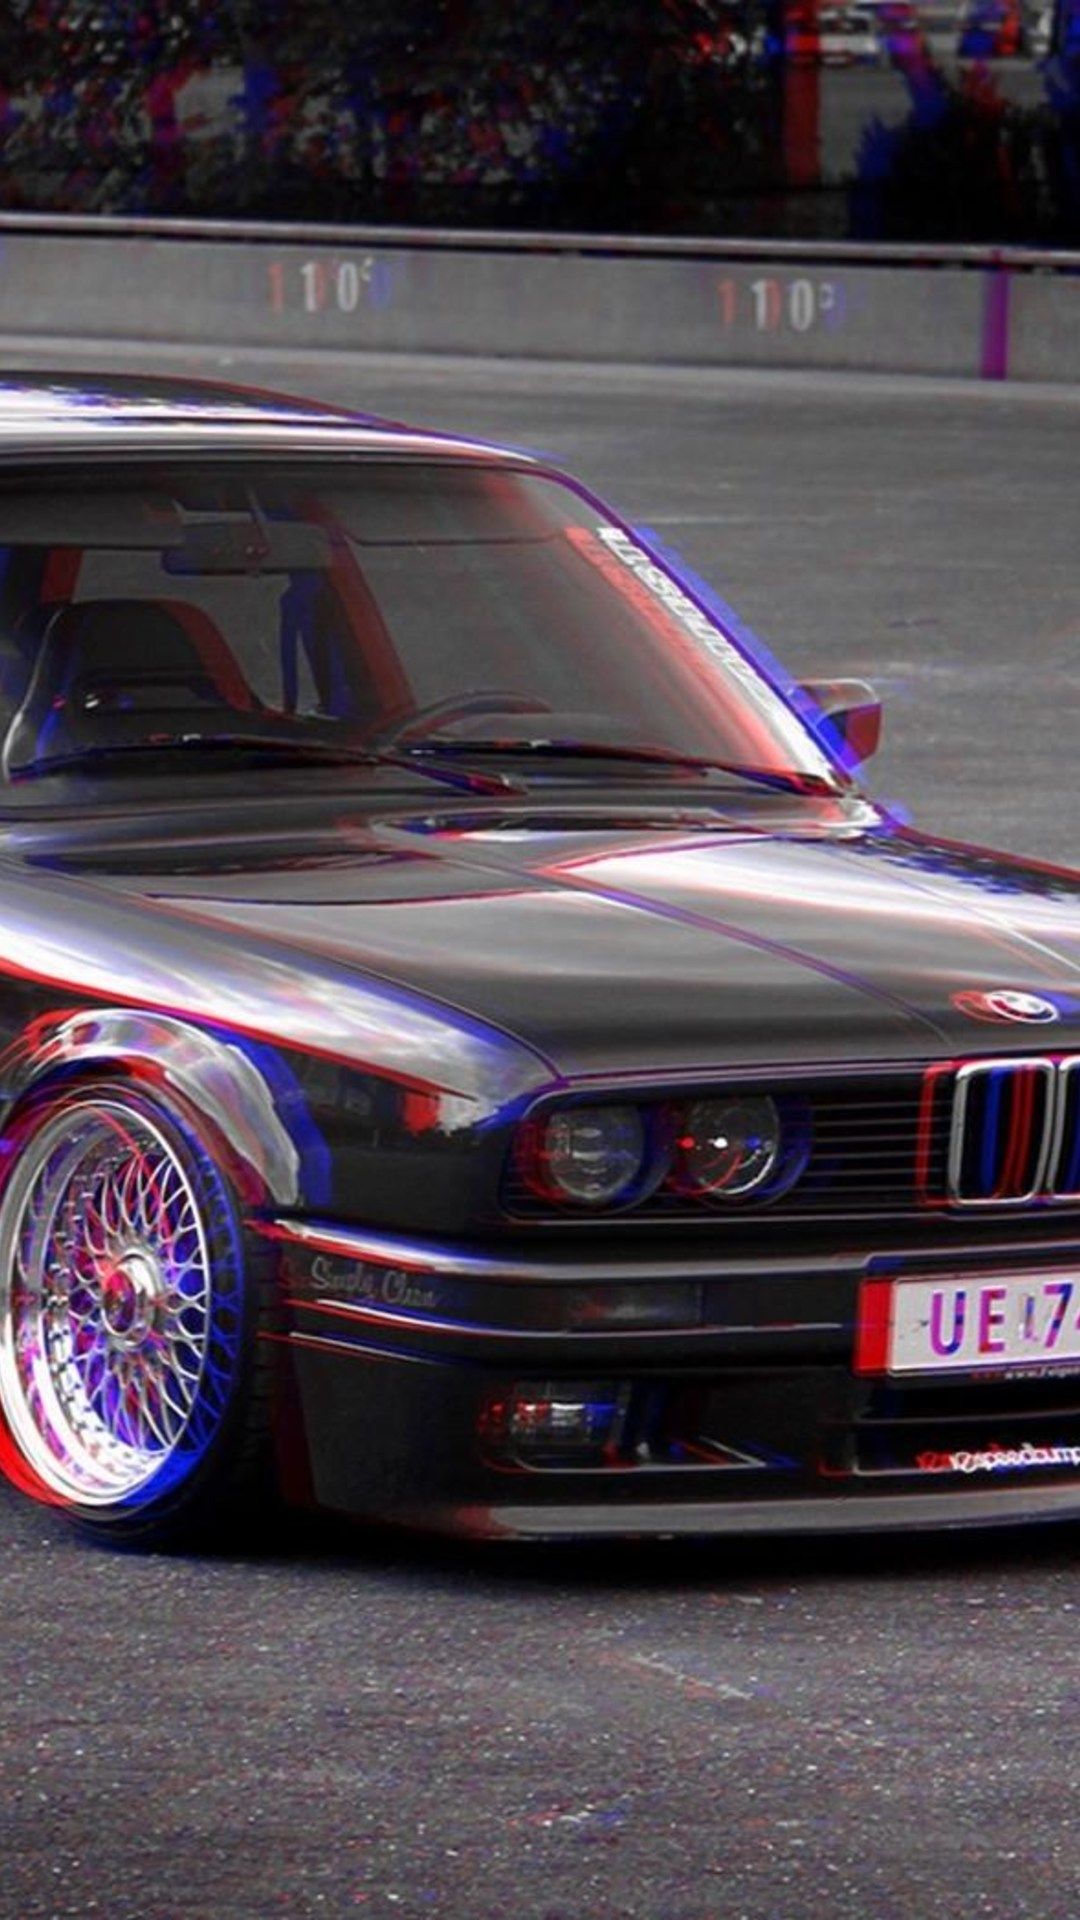 3D wallpaper of a BMW car - BMW